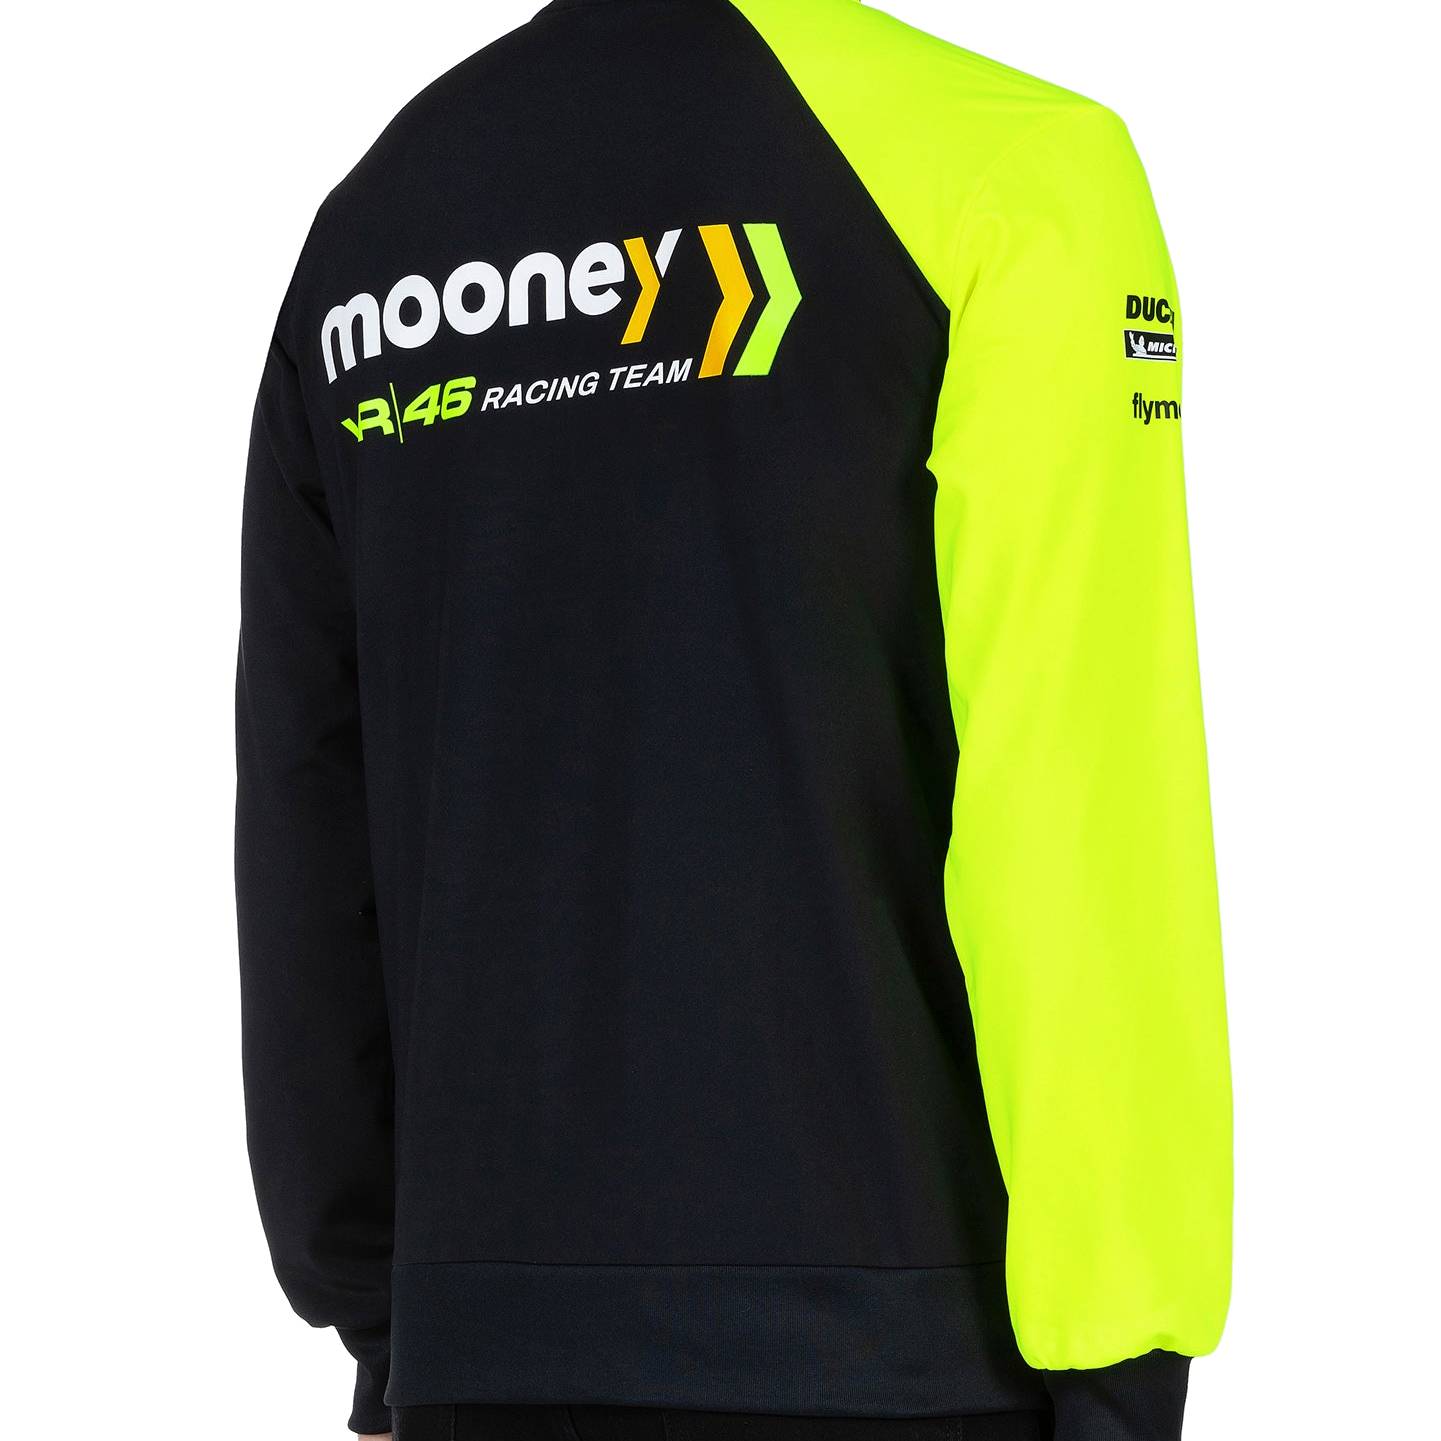 Mooney VR46 Racing Sweatjacke "Team" - schwarz